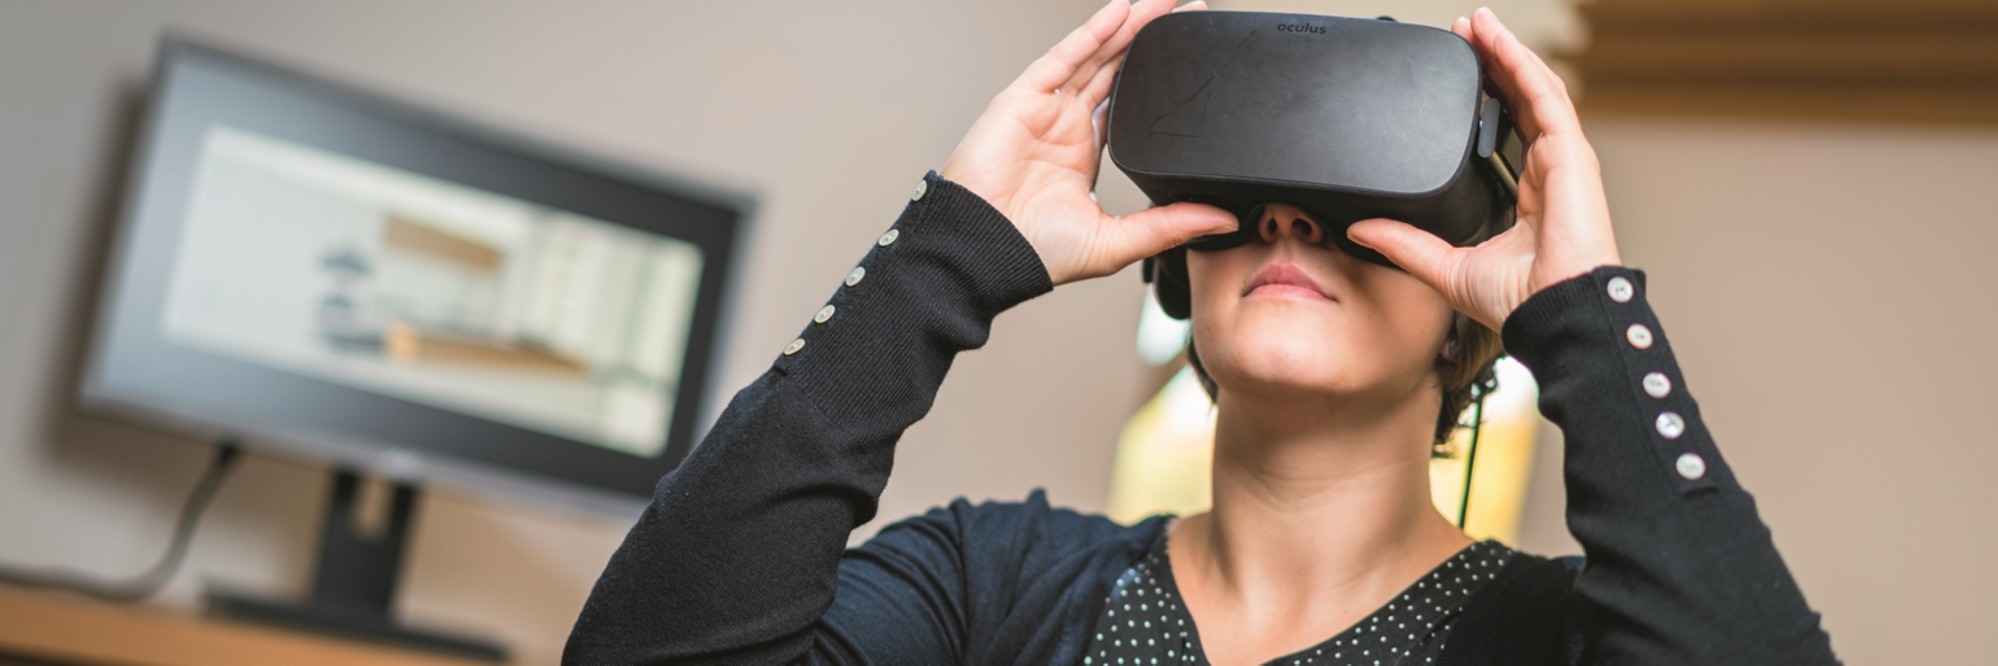 Virtual-Reality-Brillen im Handwerk – Die interaktive 3D-Visualisierung von Ideen und Produkten